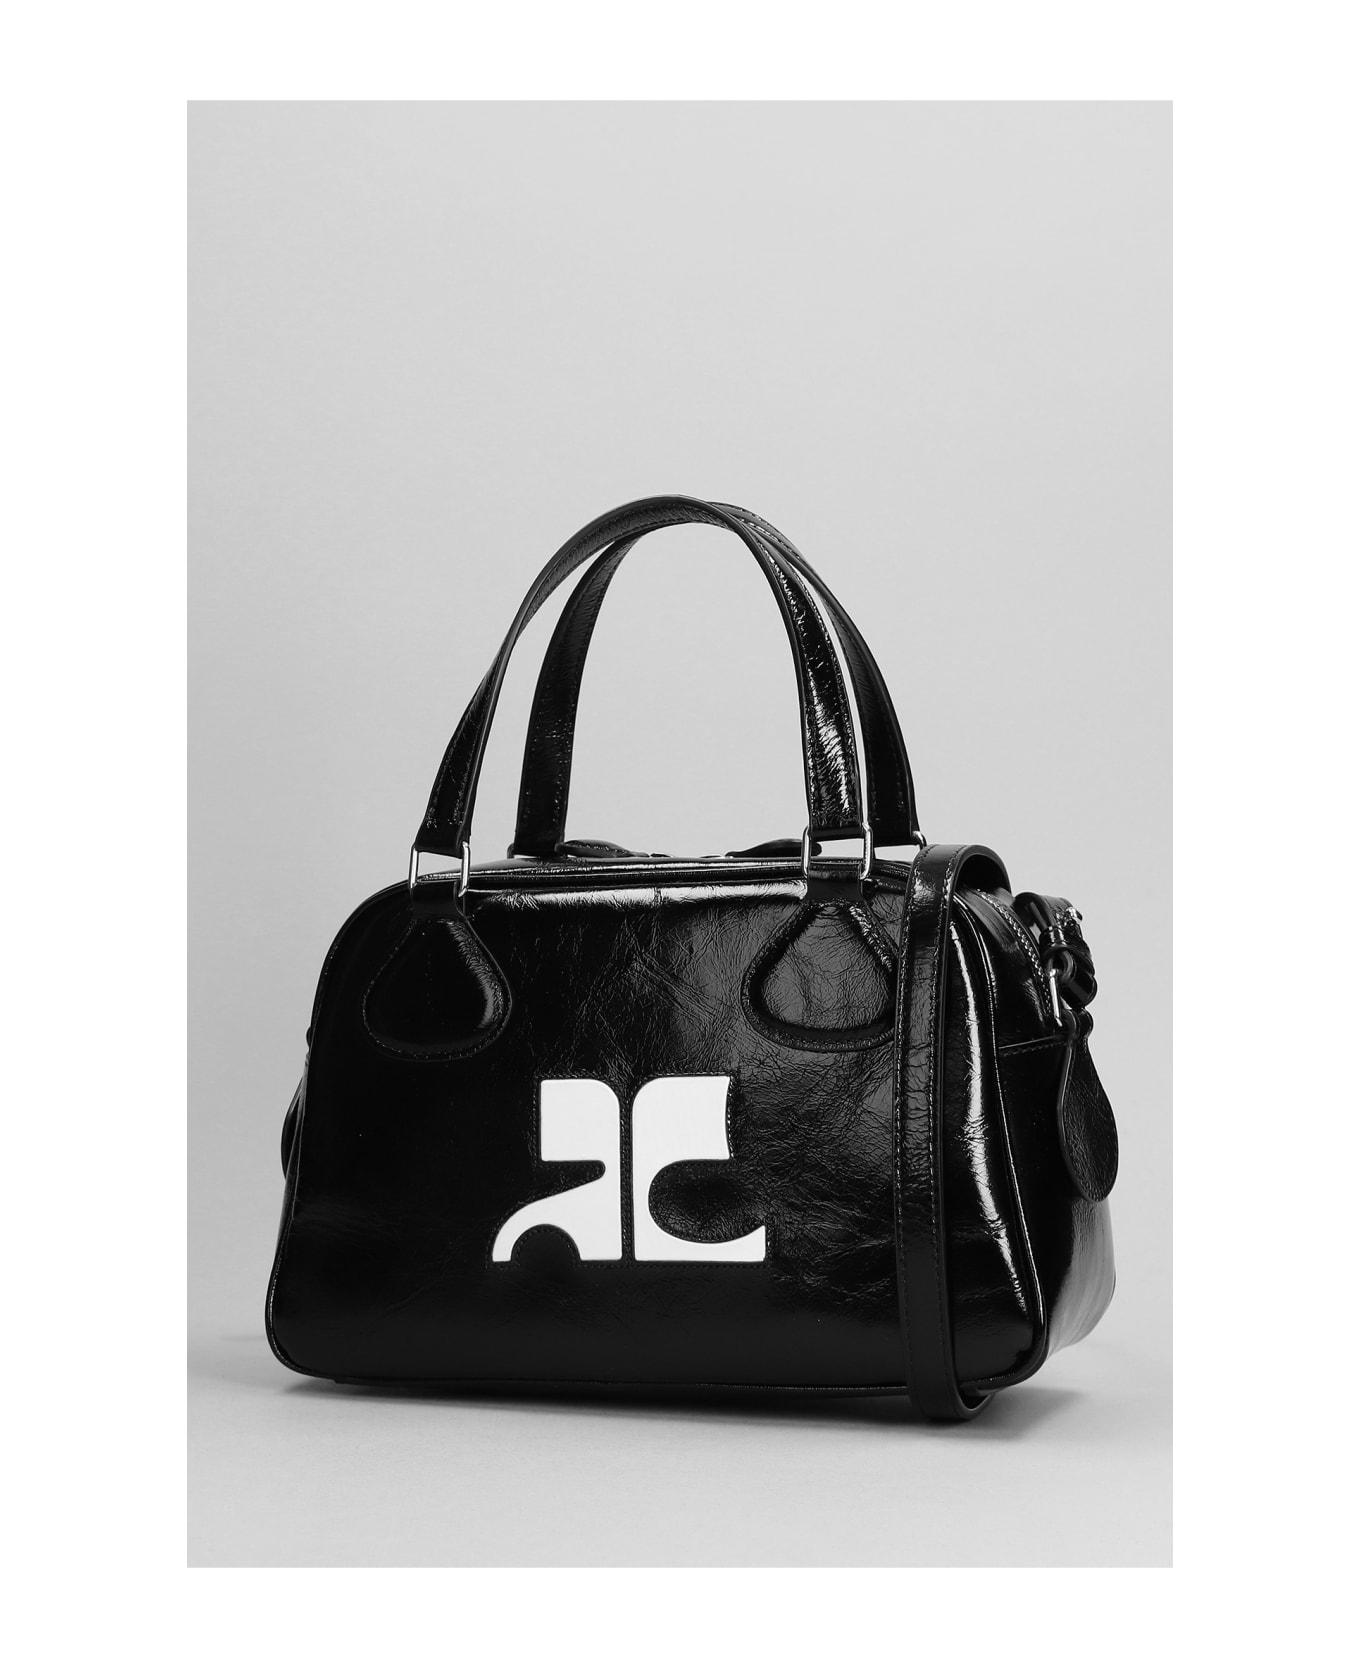 Courrèges Bowling Shoulder Bag In Black Patent Leather - black トートバッグ